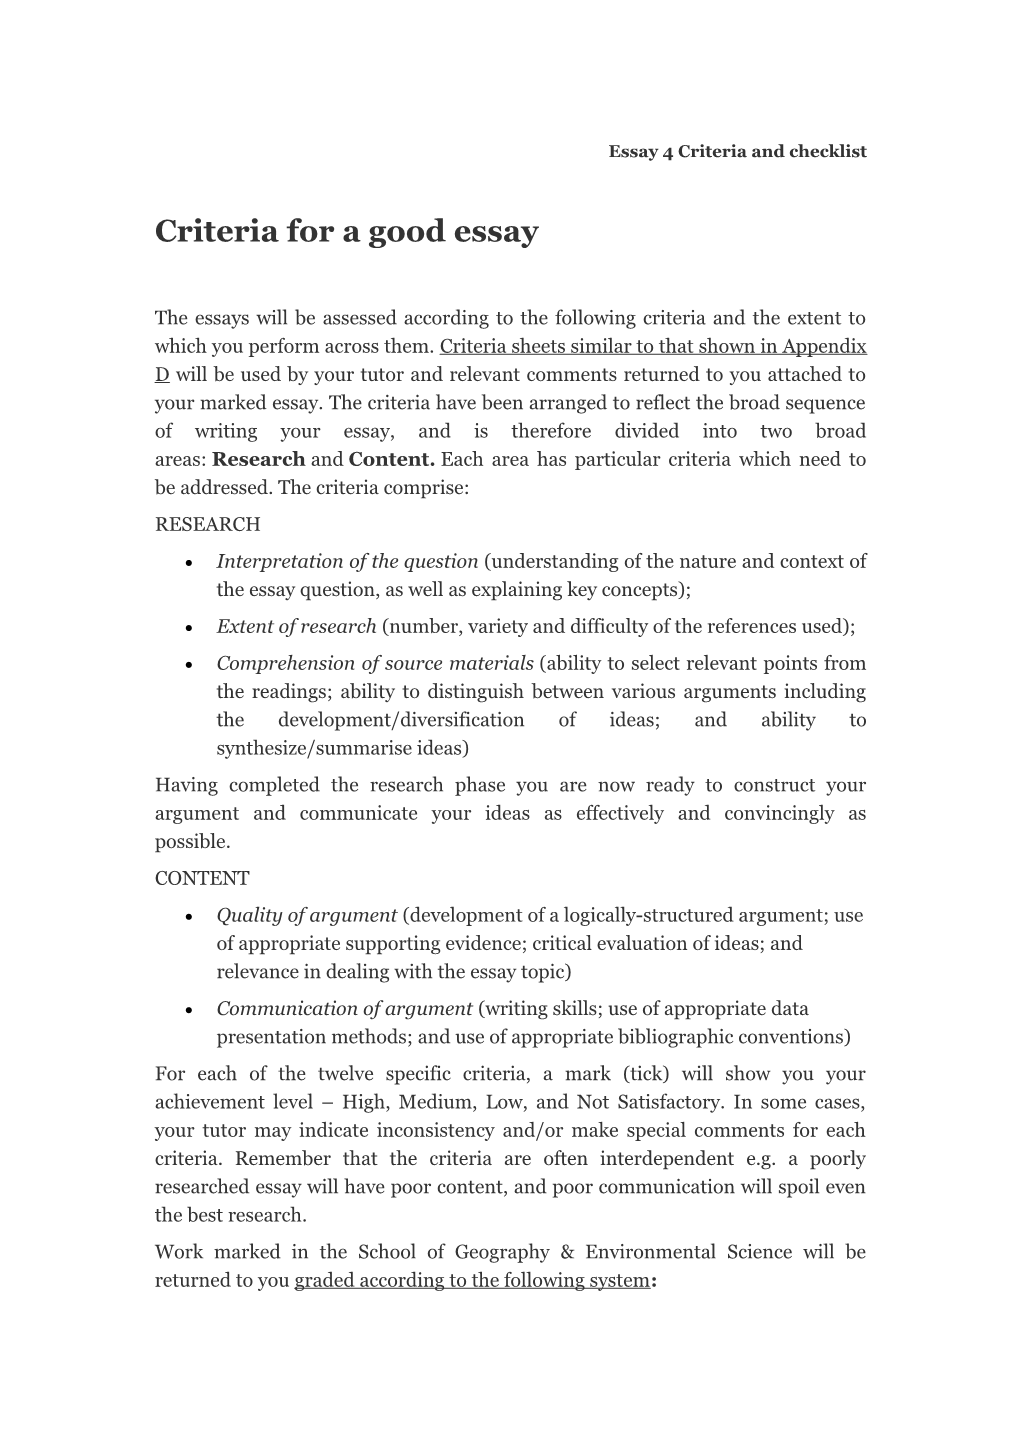 Essay 4 Criteria and Checklist